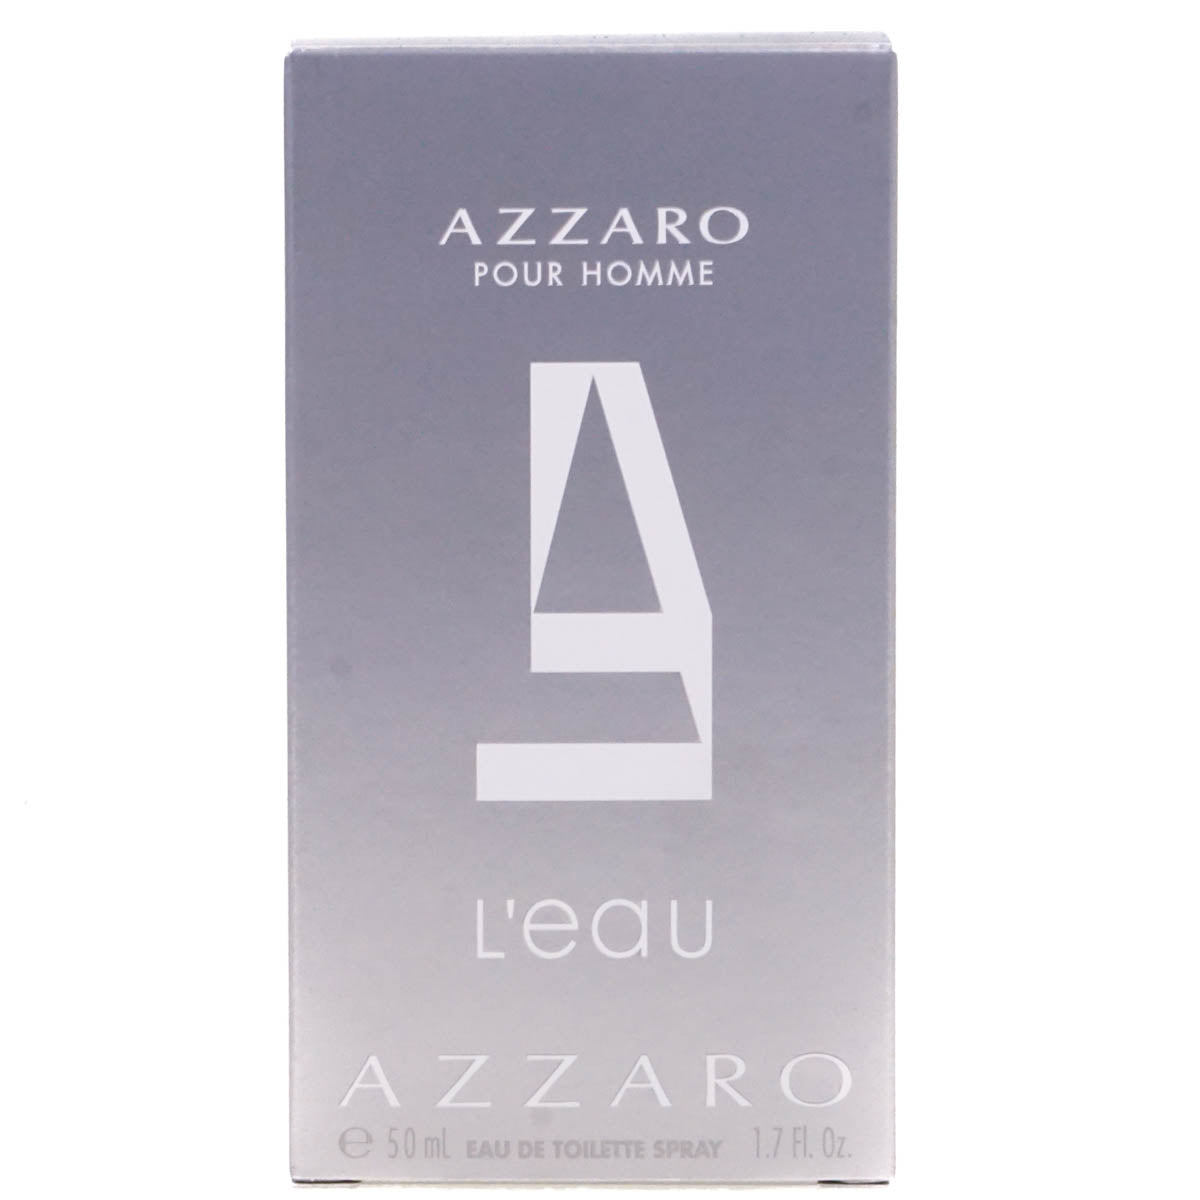  Azzaro Pour Homme L'Eau 50ml Eau De Toilette Spray